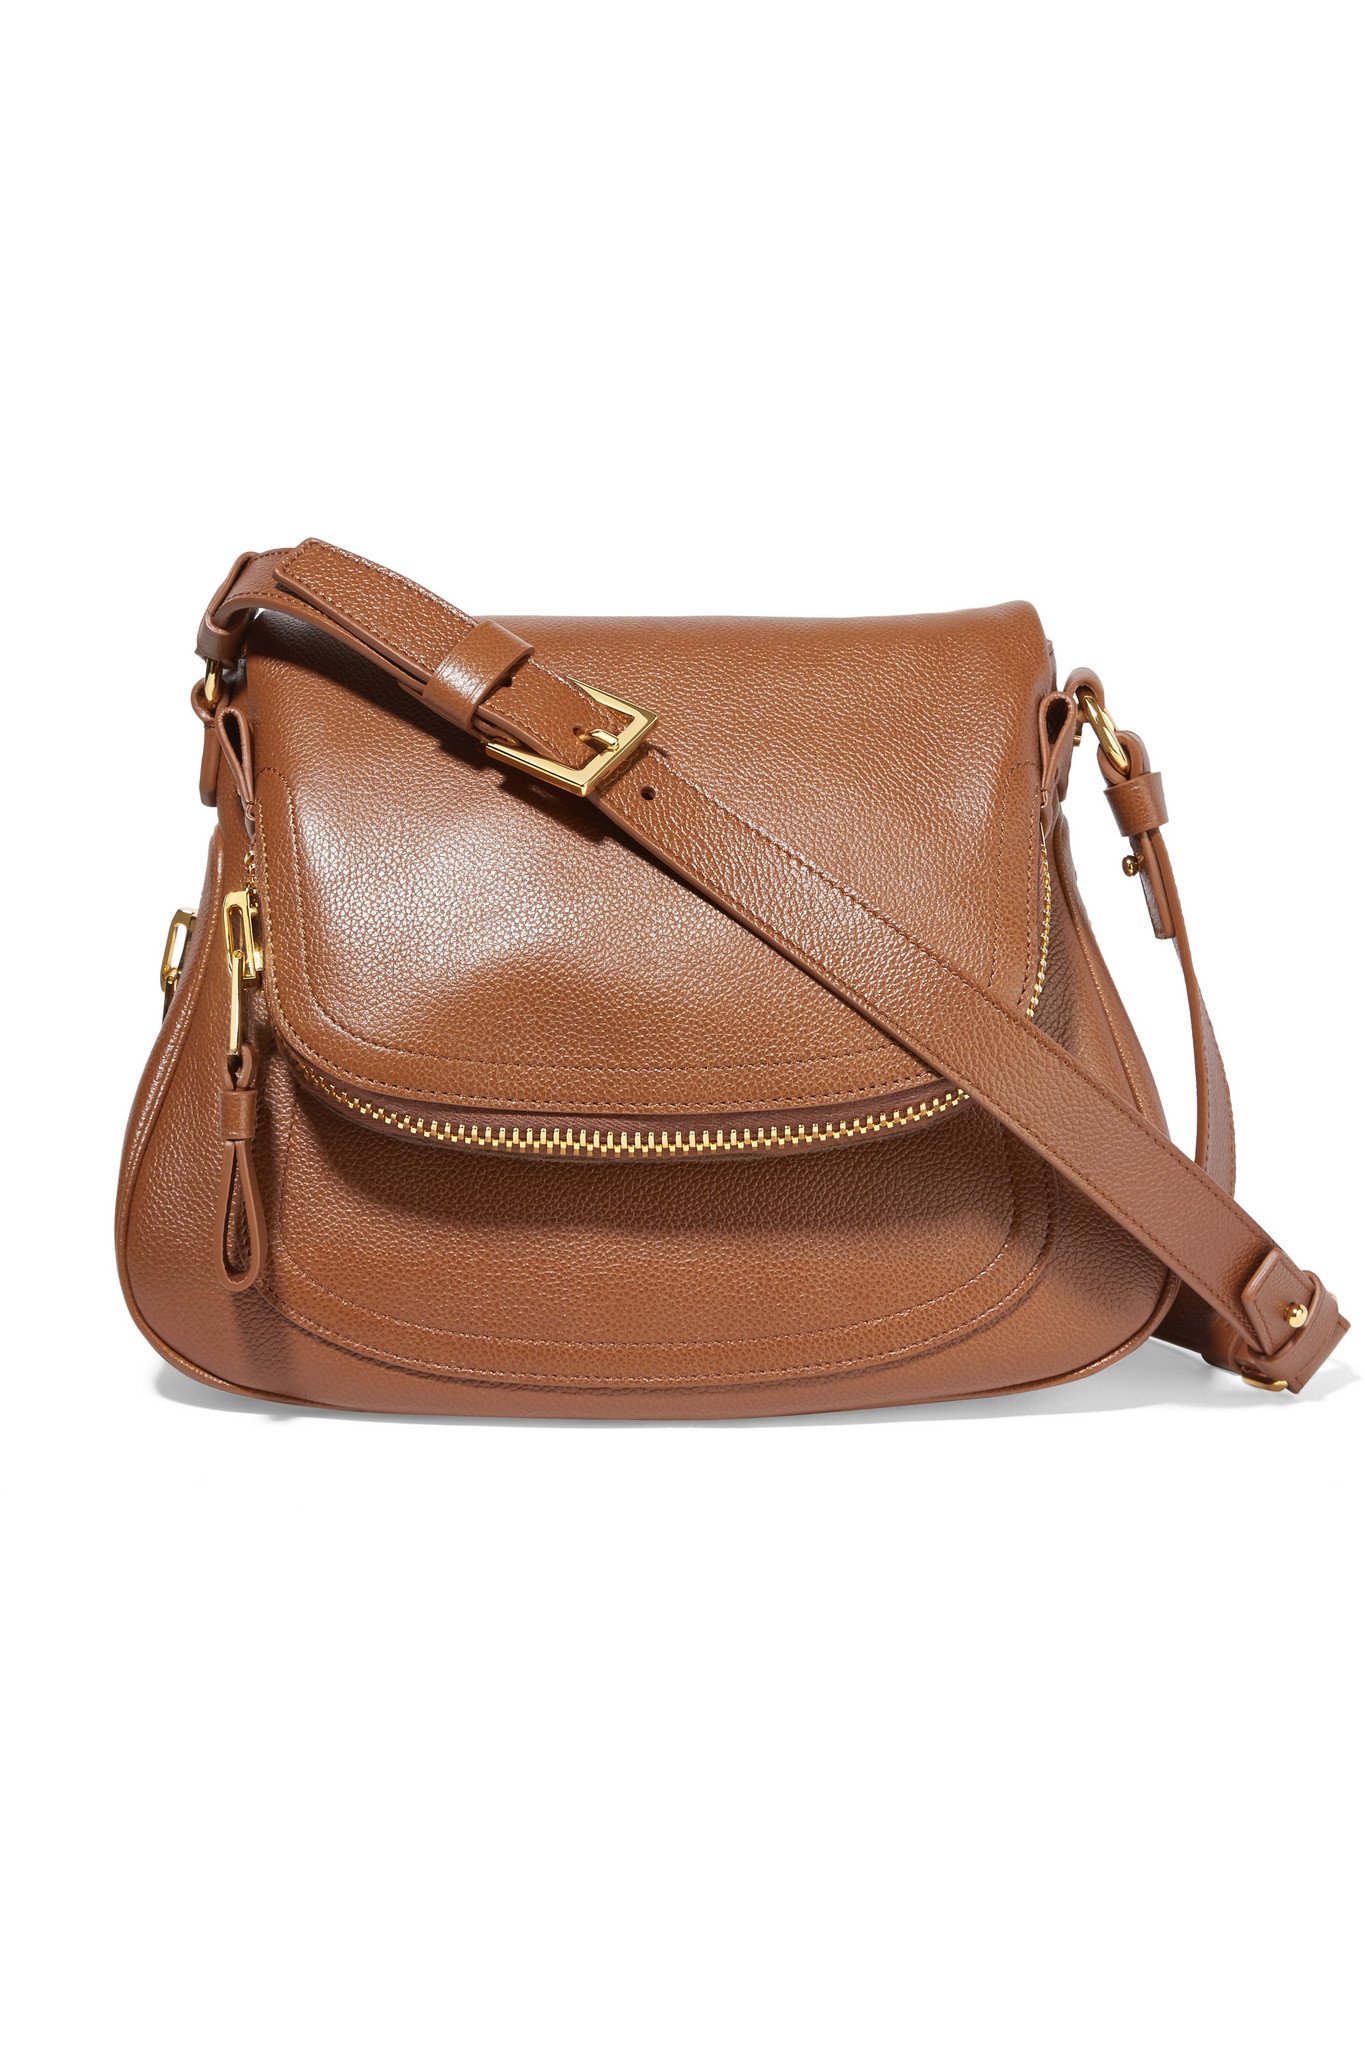 Tom Ford Jennifer Medium Textured-Leather Shoulder Bag in Brown | Lyst